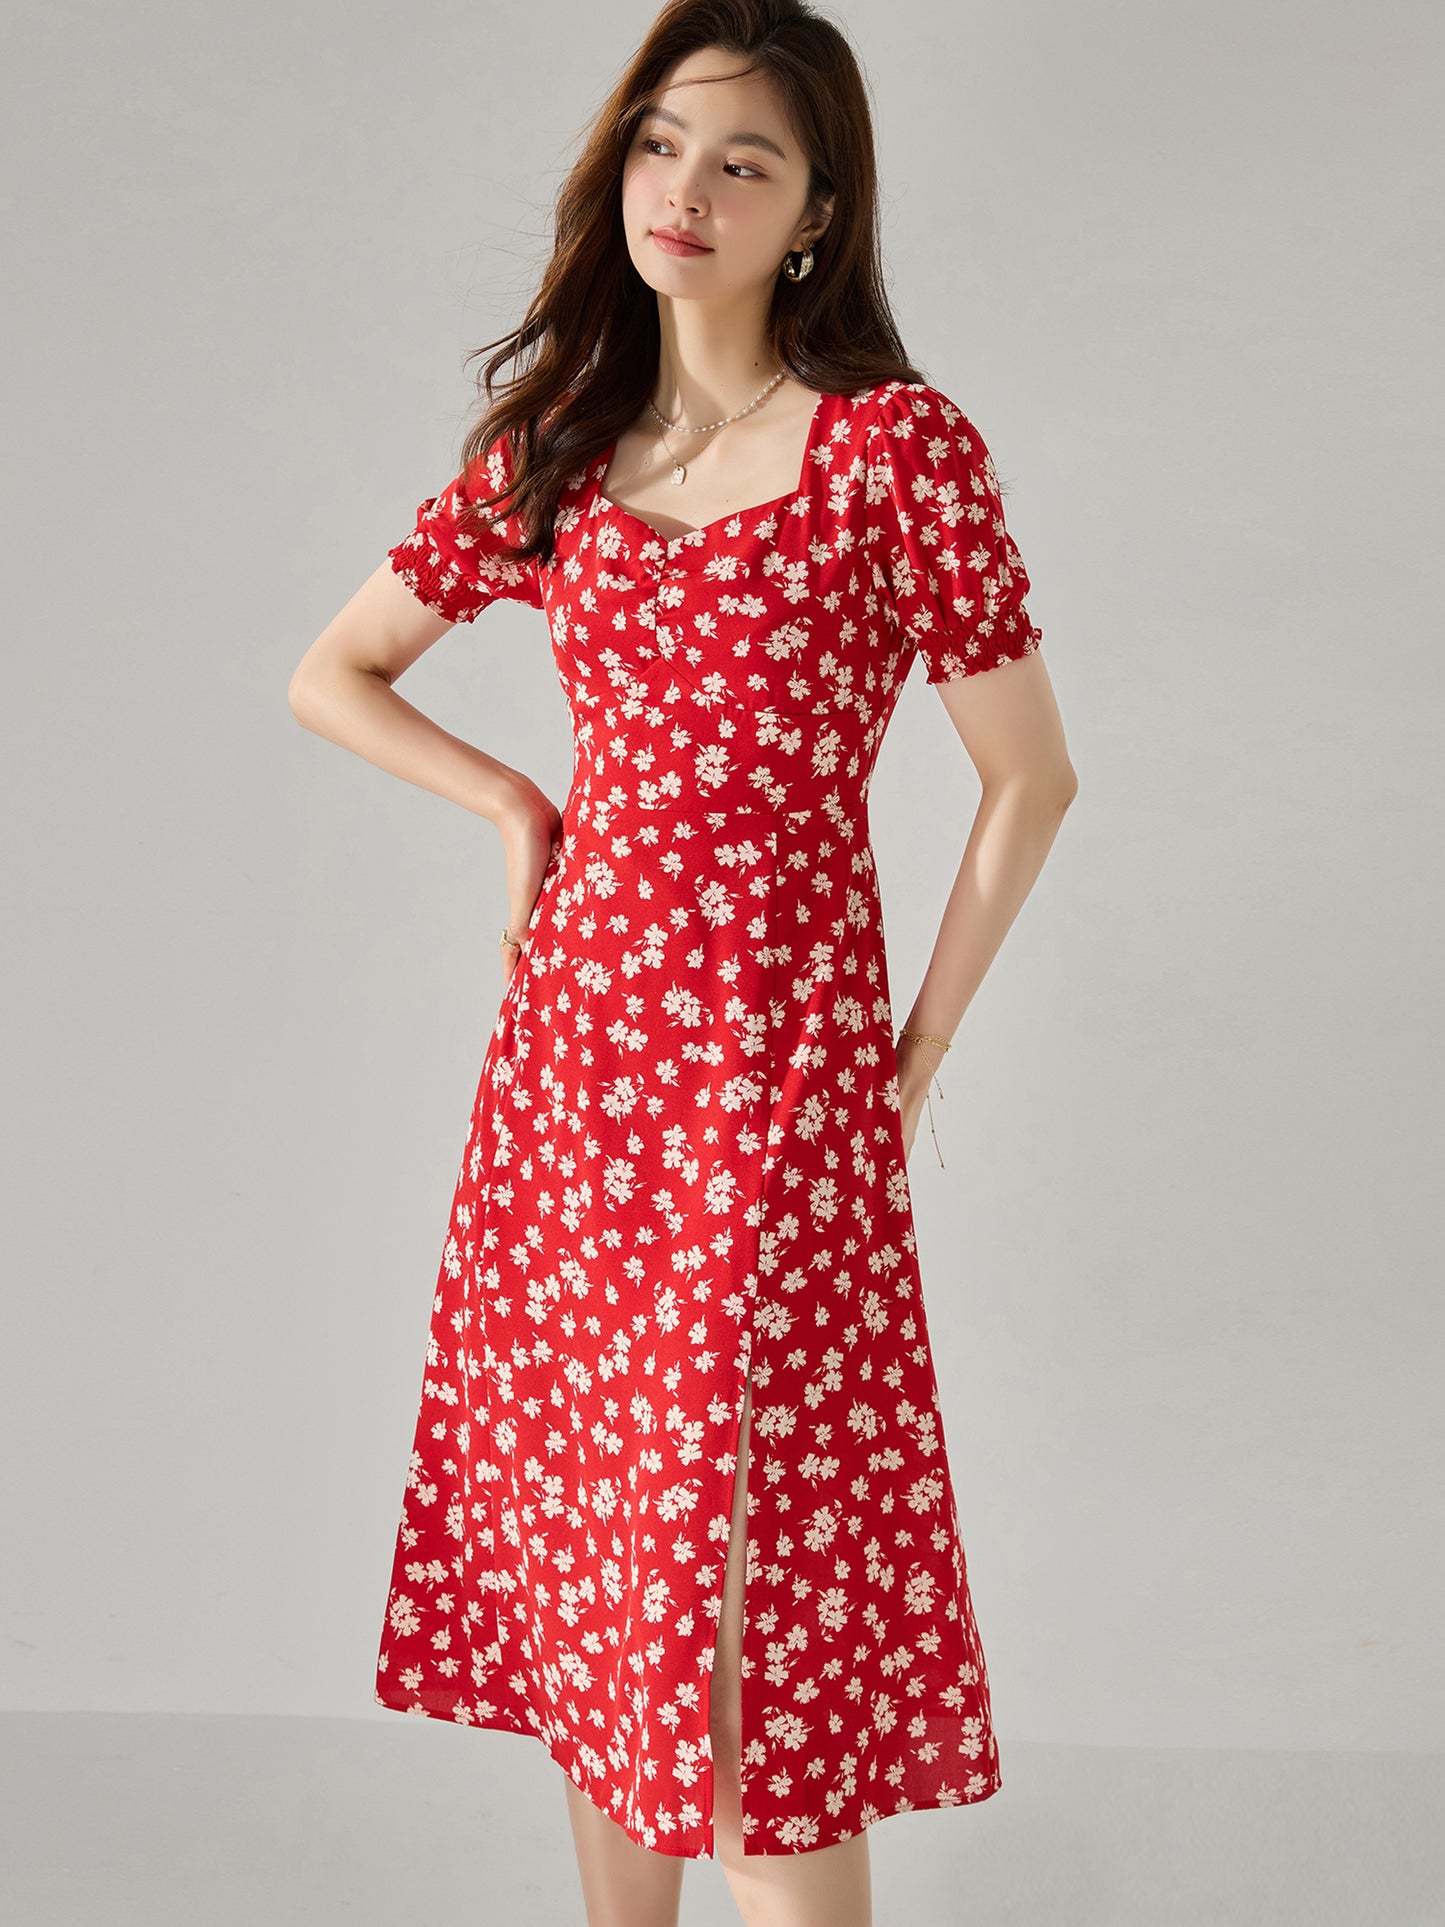 【C&M】Red Printed Dress